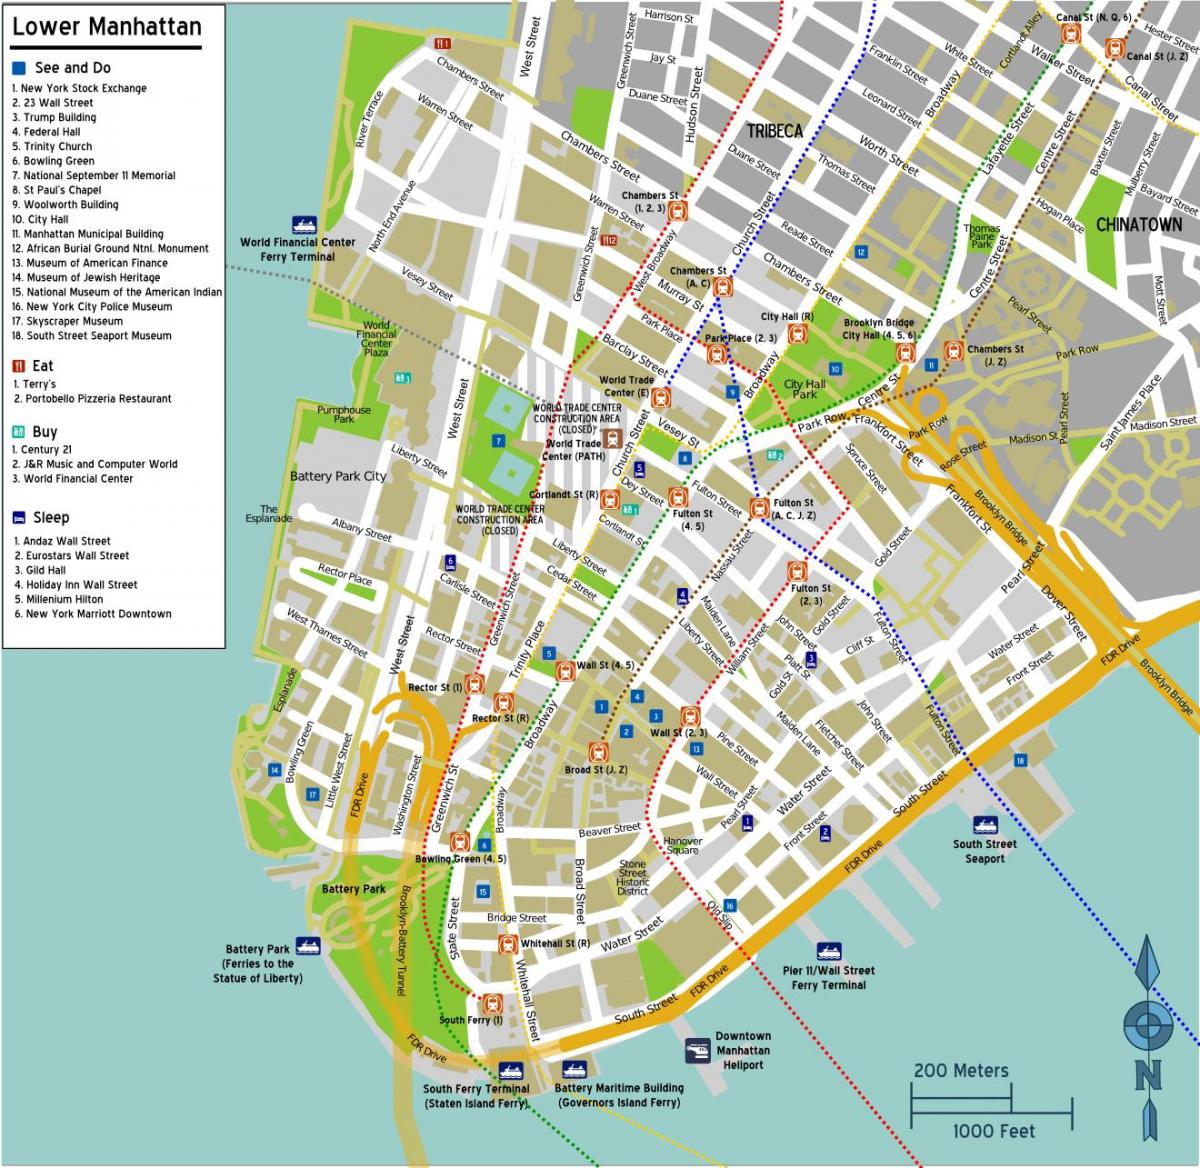 žemėlapis žemutiniame Manhetene su gatvių pavadinimų